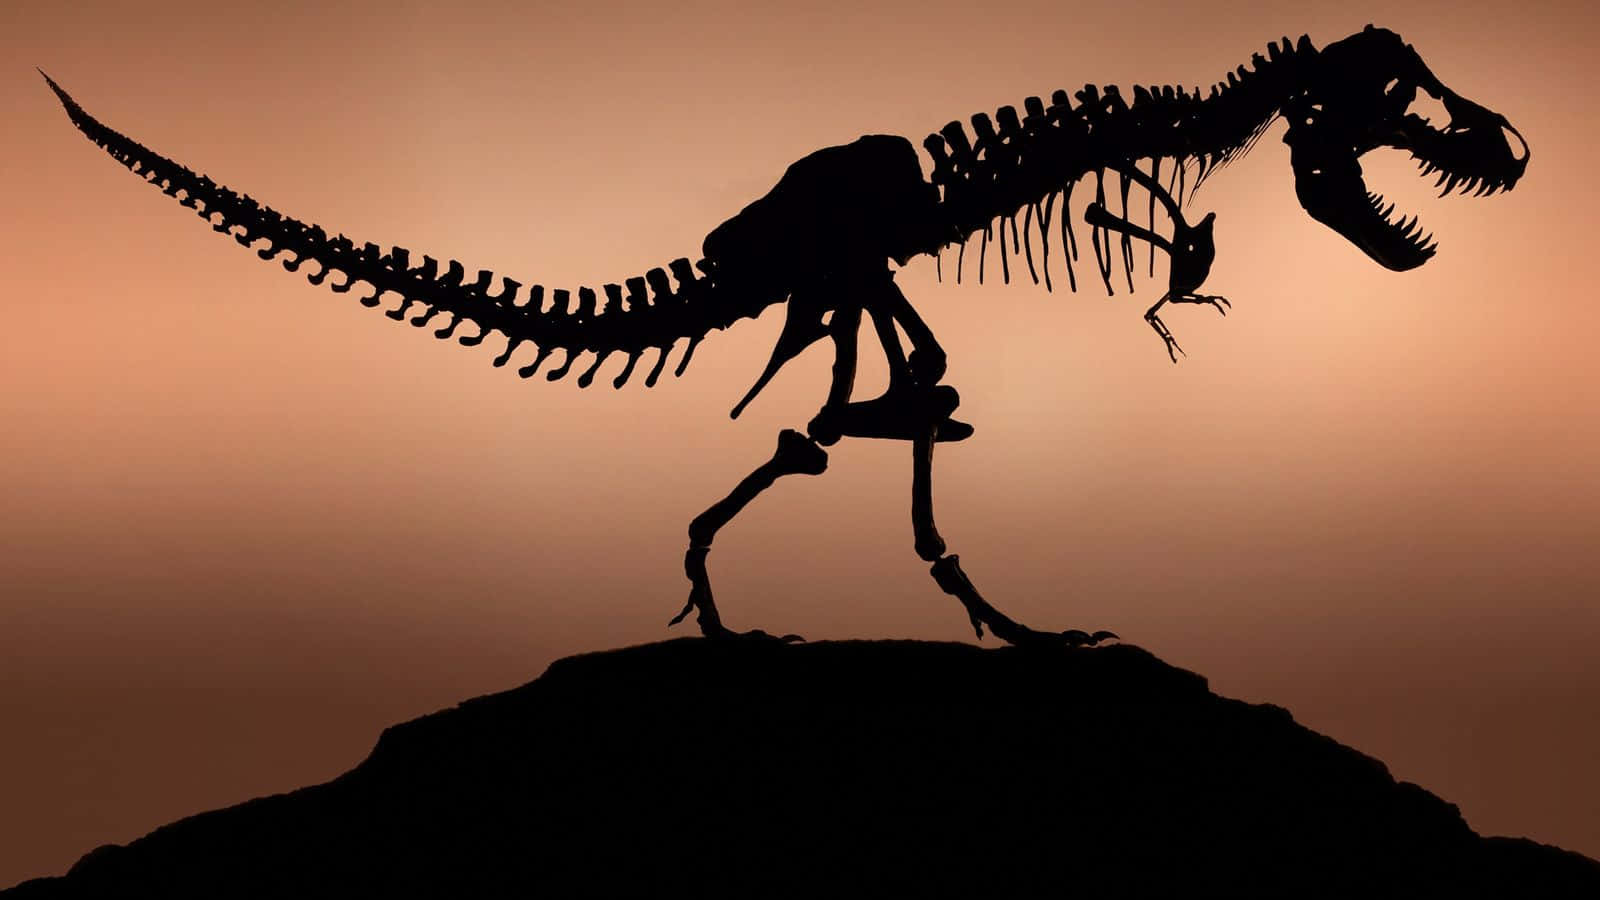 Et T-rex Skelet er skitseret på en klippeformation